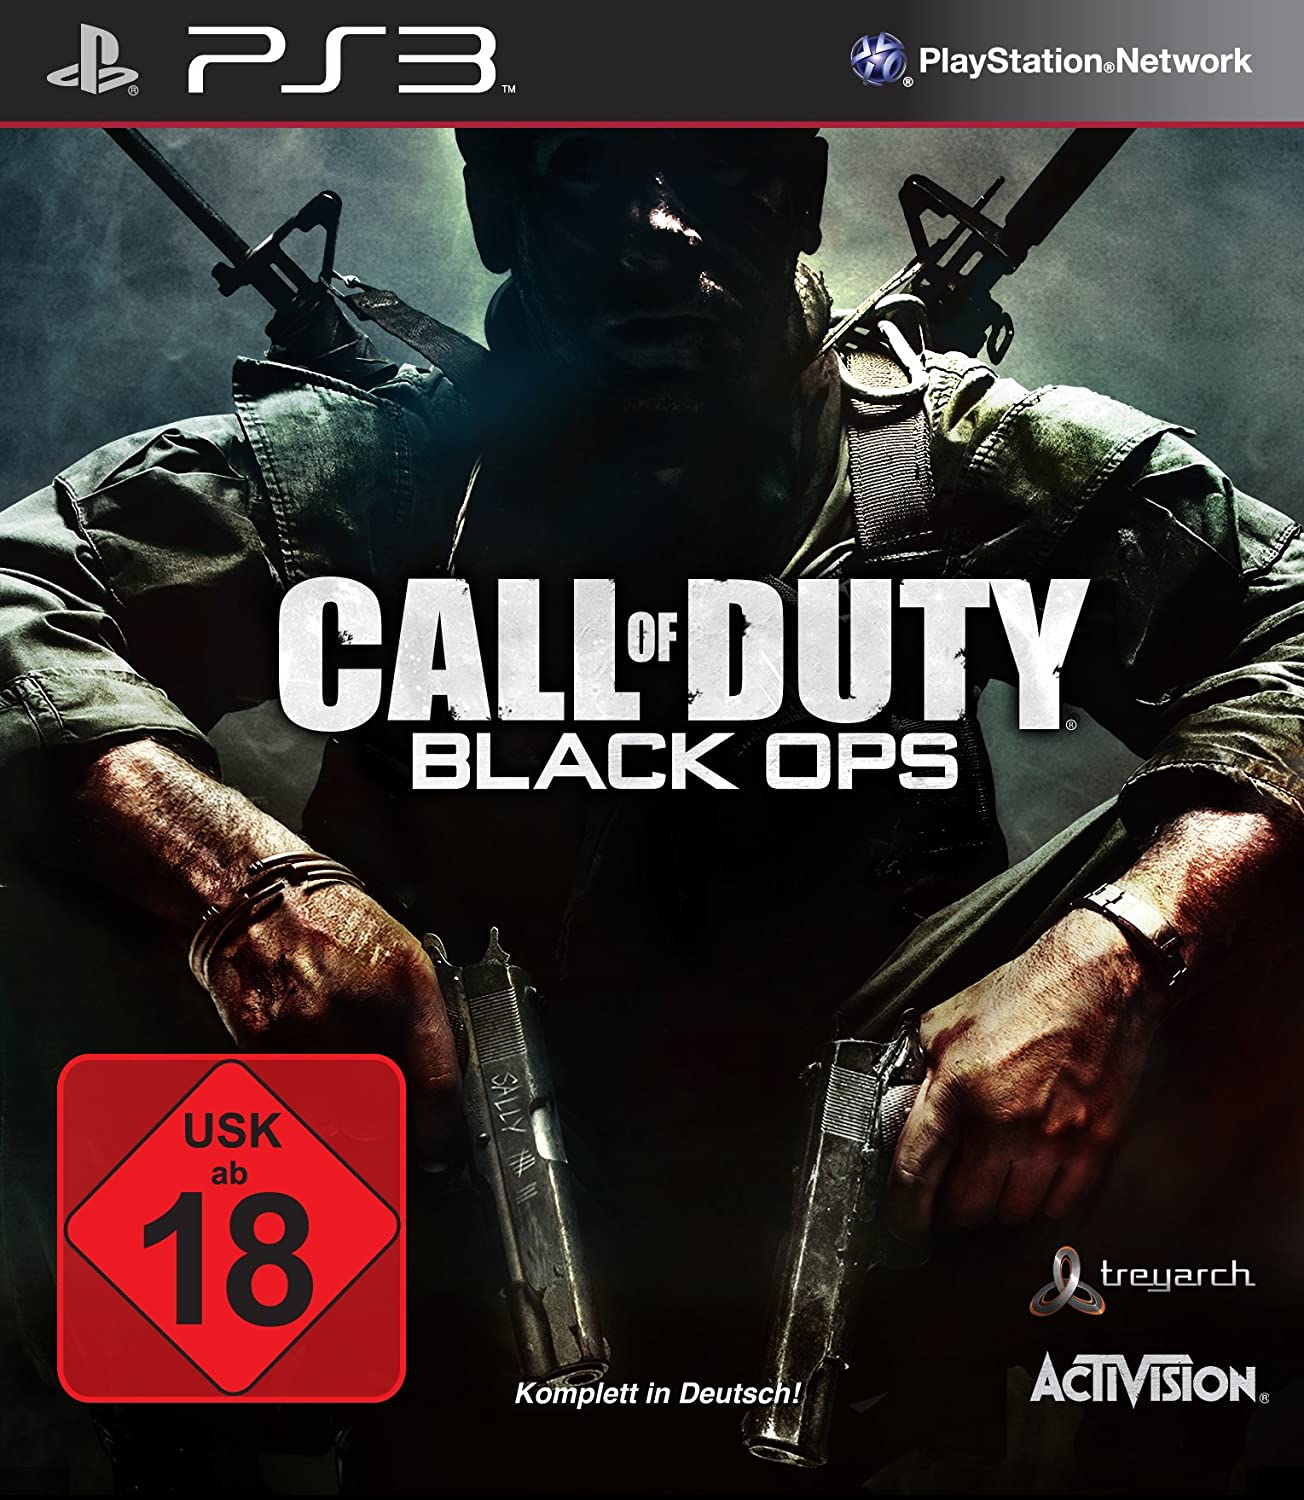 Call of Duty Black Ops (német) - PlayStation 3 Játékok